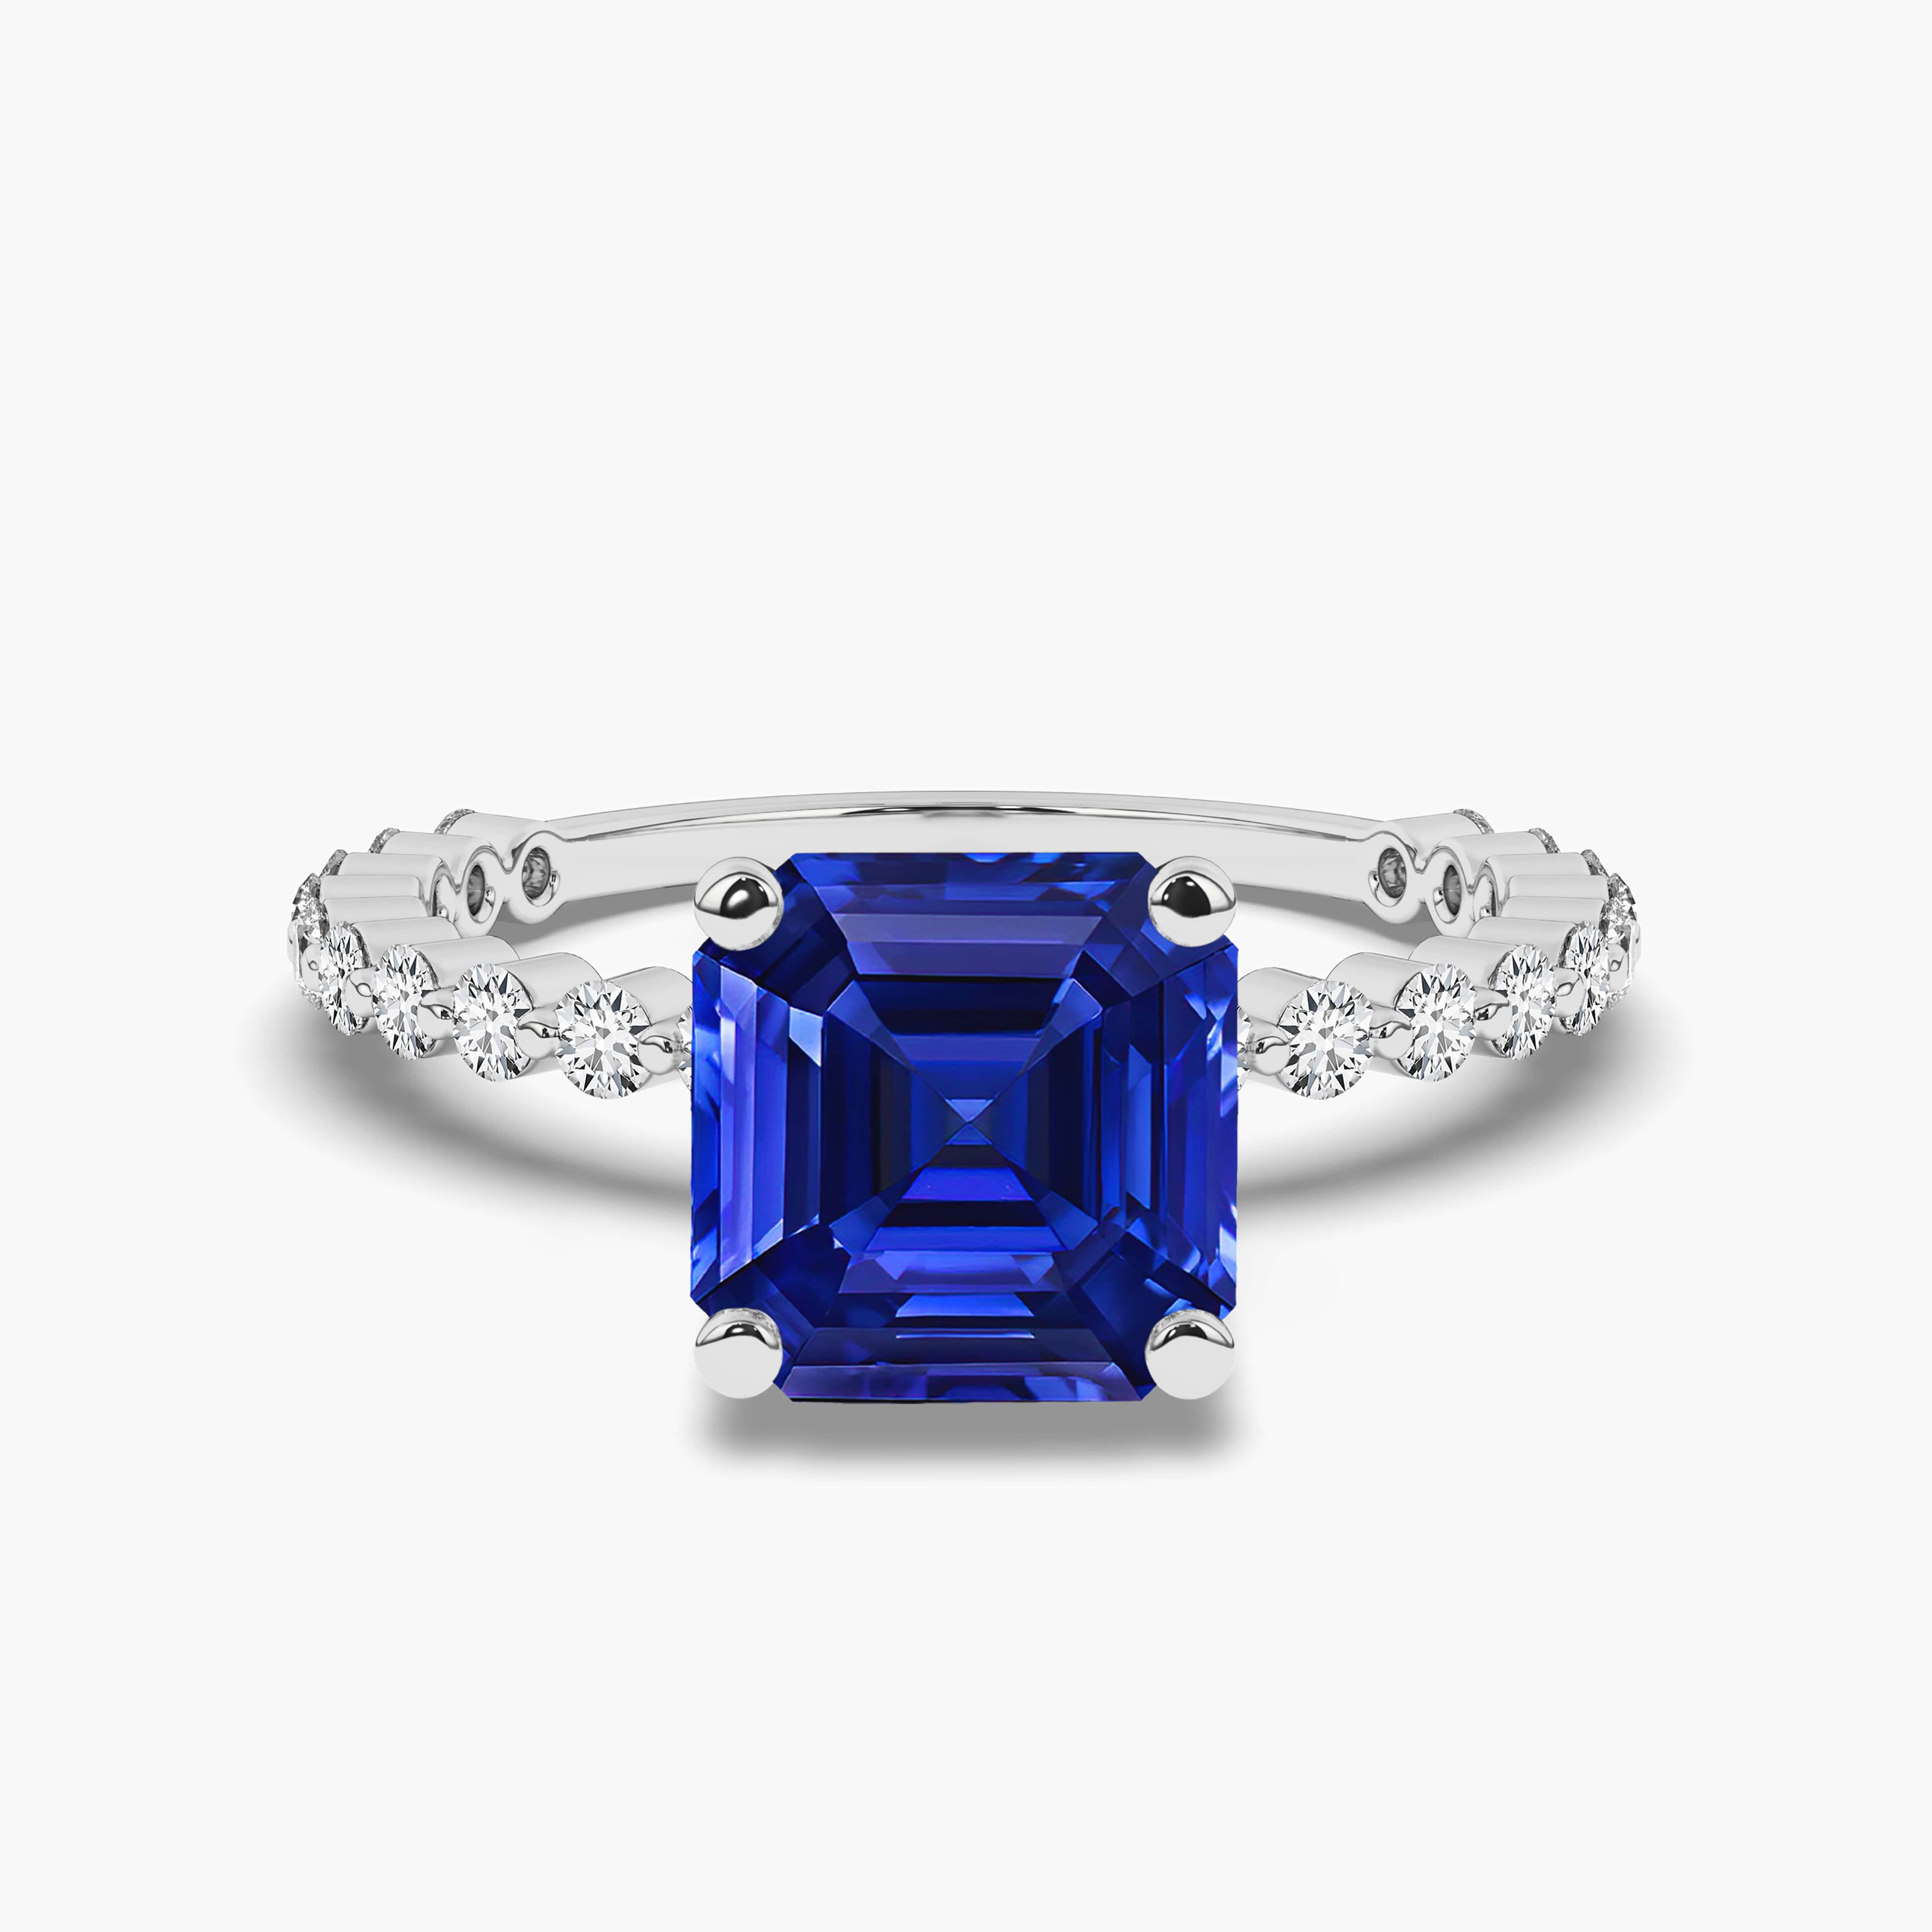  Blue Sapphire Engagement Ring Diamonds White Gold Asscher 